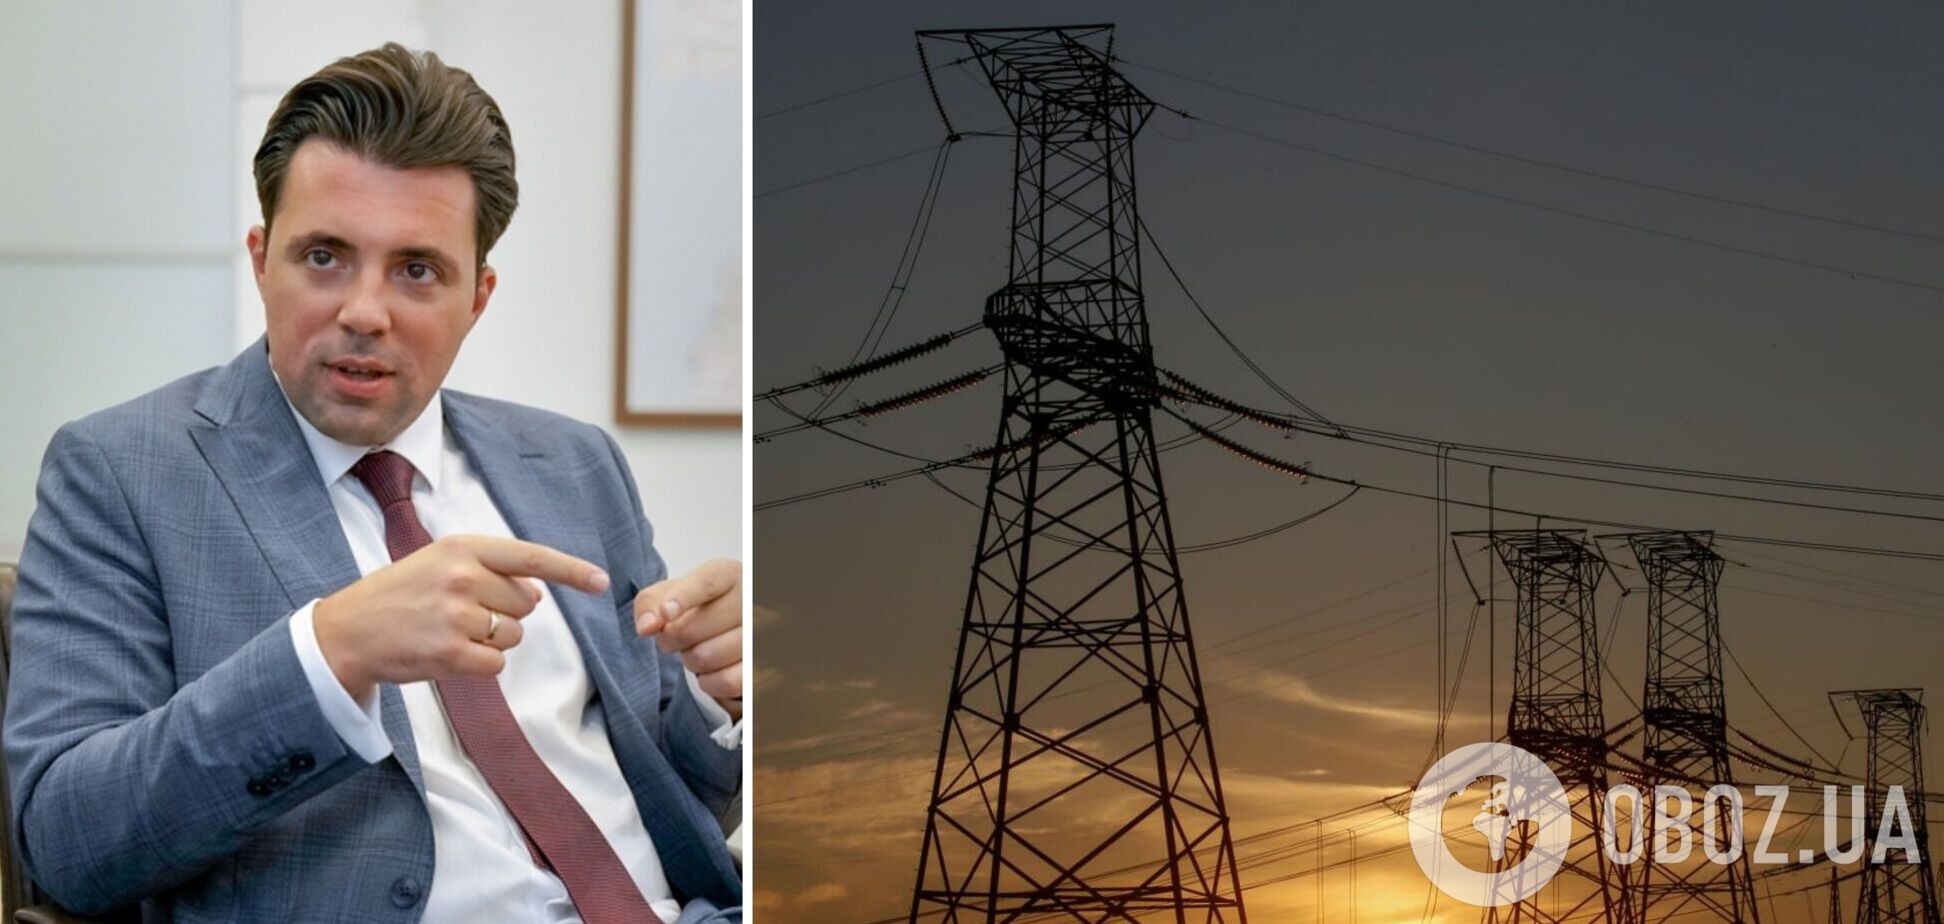 Установленные лимиты на цену электроэнергии мешают импорту электричества в часы дефицита, – Кудрицкий